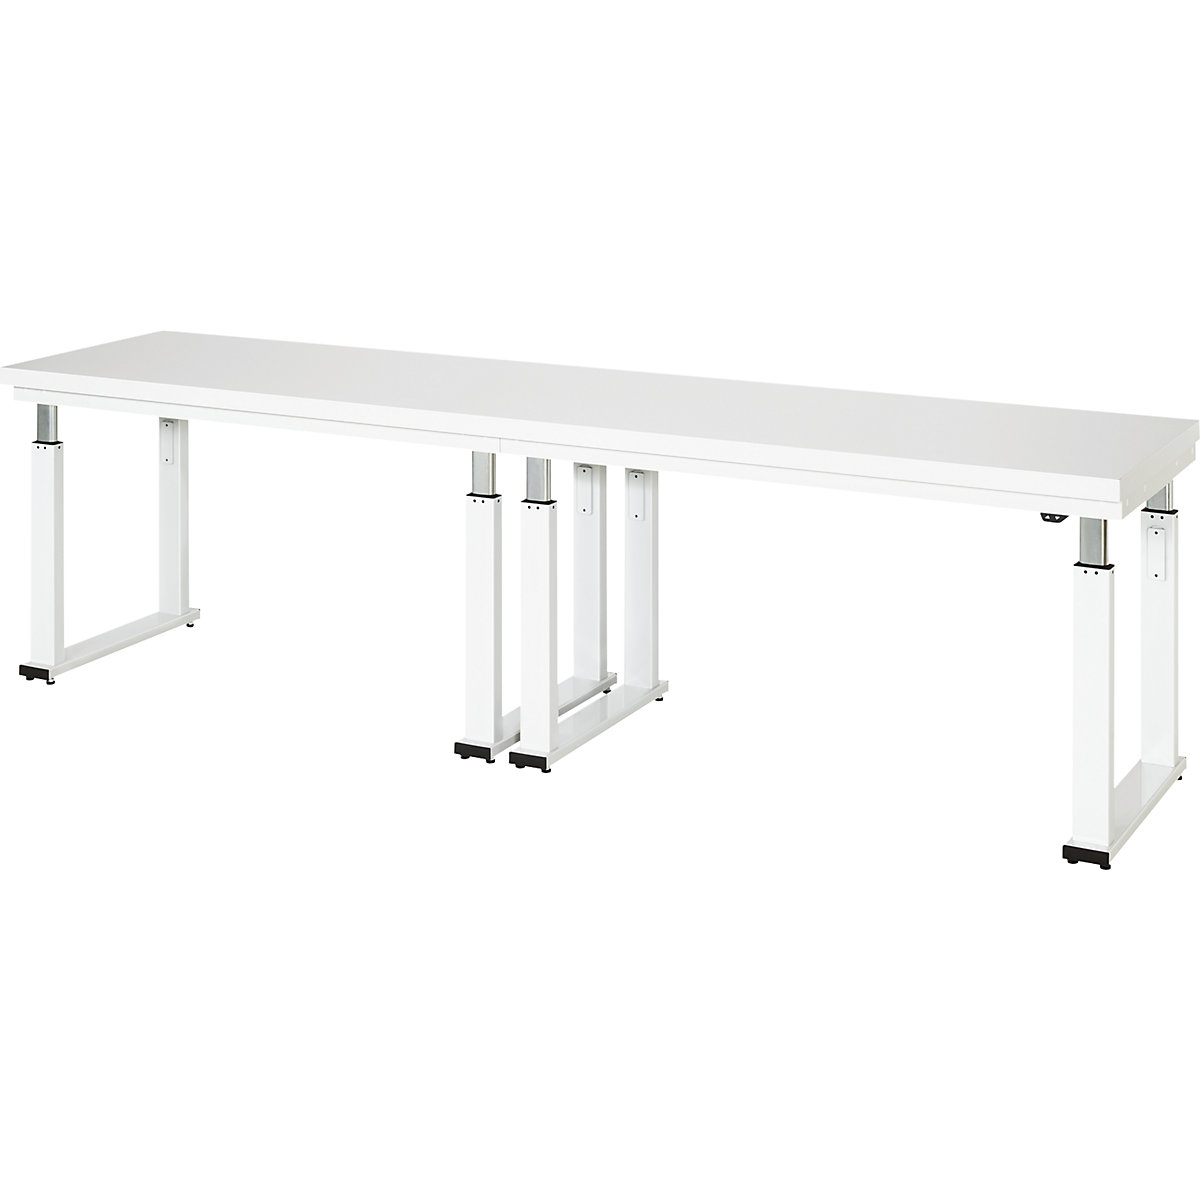 Psací stůl s elektrickým přestavováním výšky – RAU, deska z tvrdého laminátu, nosnost 600 kg, š x h 3000 x 700 mm-5